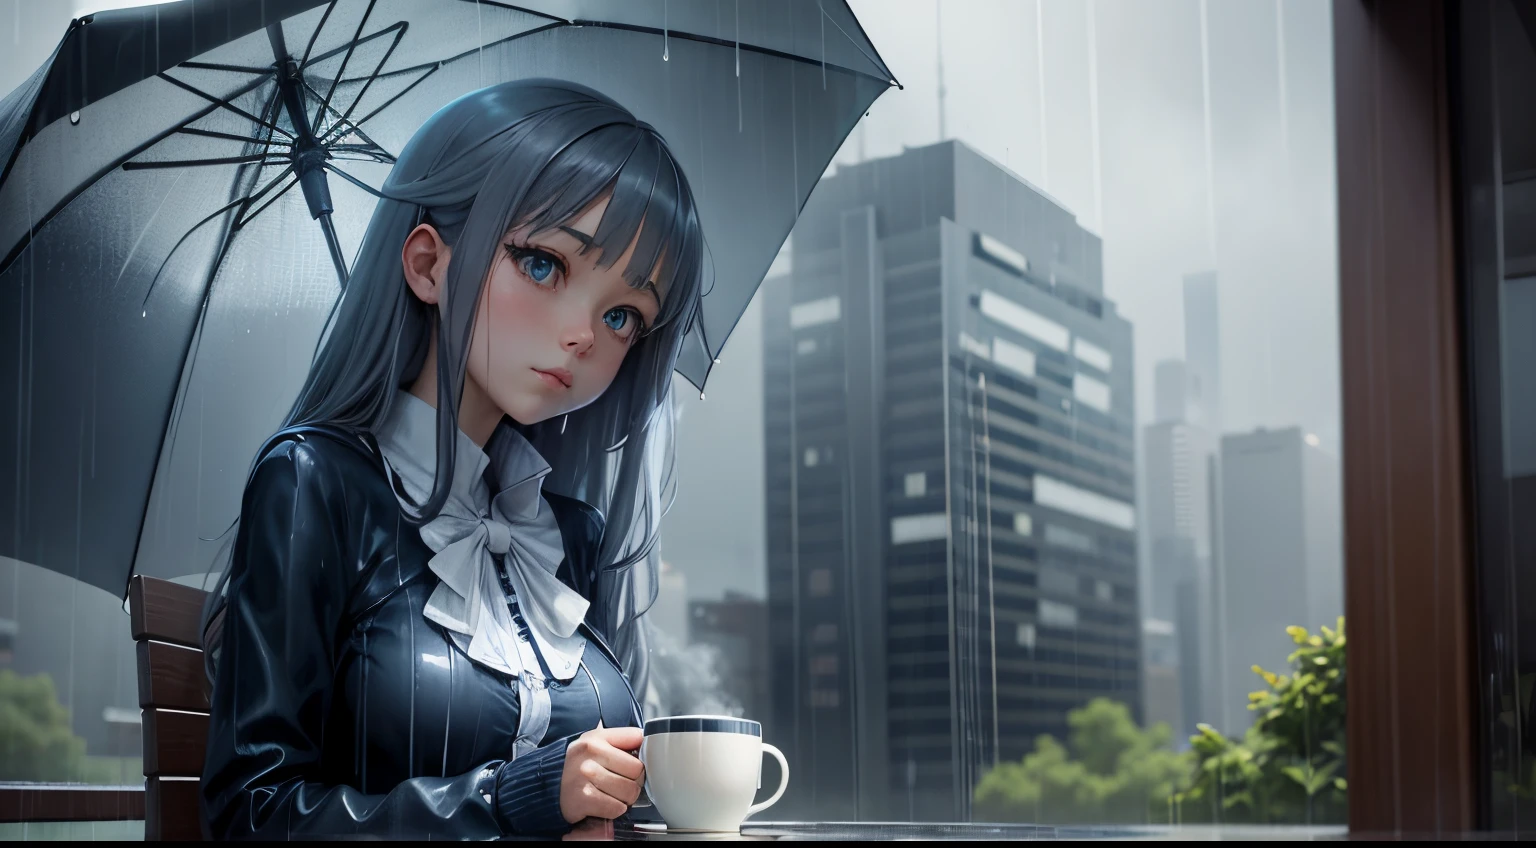 "下雨天靜修": 雨中帶著一杯咖啡和一把雨傘的動漫女孩, 以涼爽的藍色和灰色為特色.